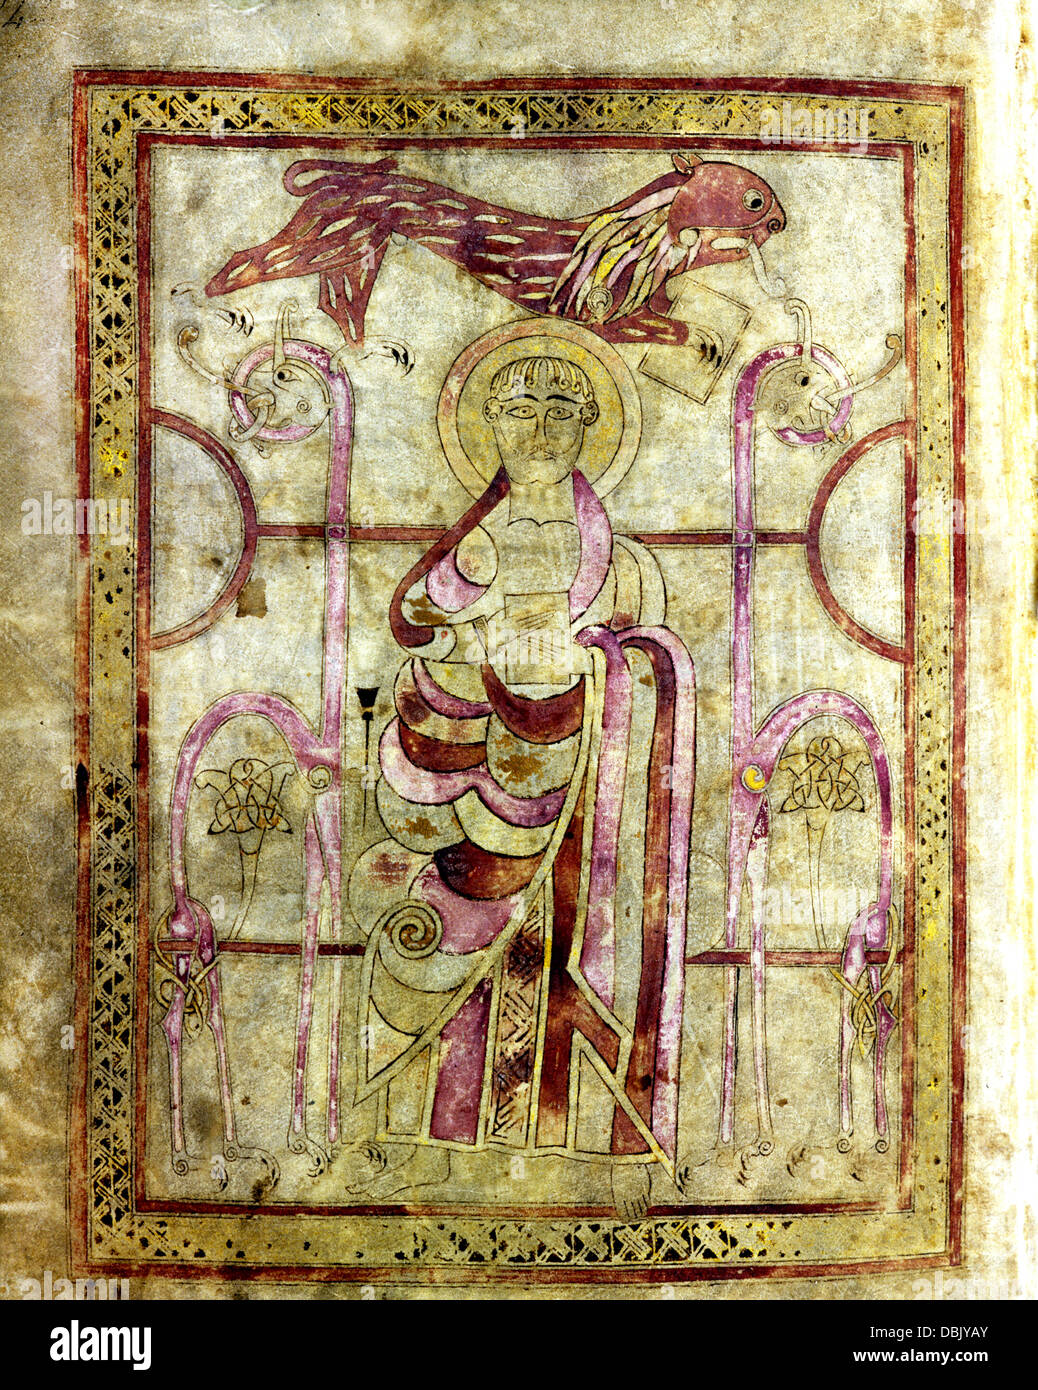 Lichfield vangeli o St Chad vangeli, introduzione al vangelo di san Marco, miniatura pagina, con il simbolo del leone Foto Stock